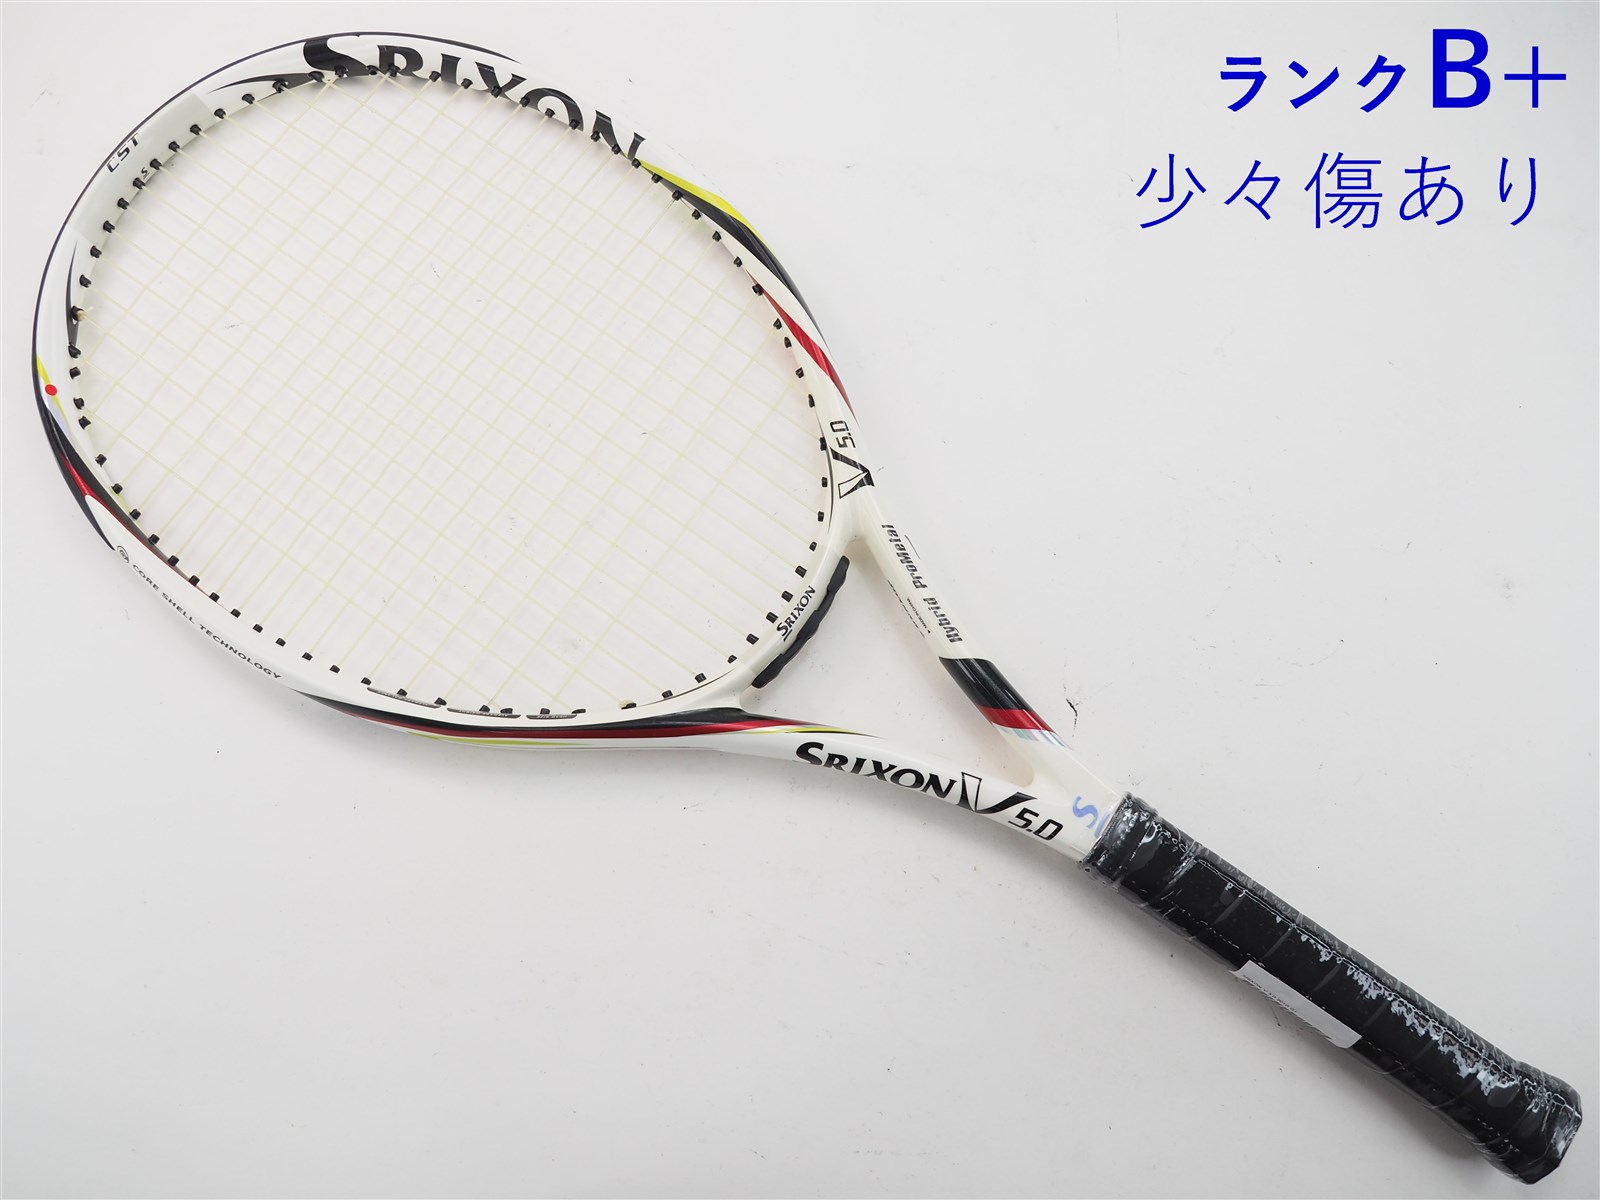 テニスラケット スリクソン スリクソン ブイ 5.0 2010年モデル (G1